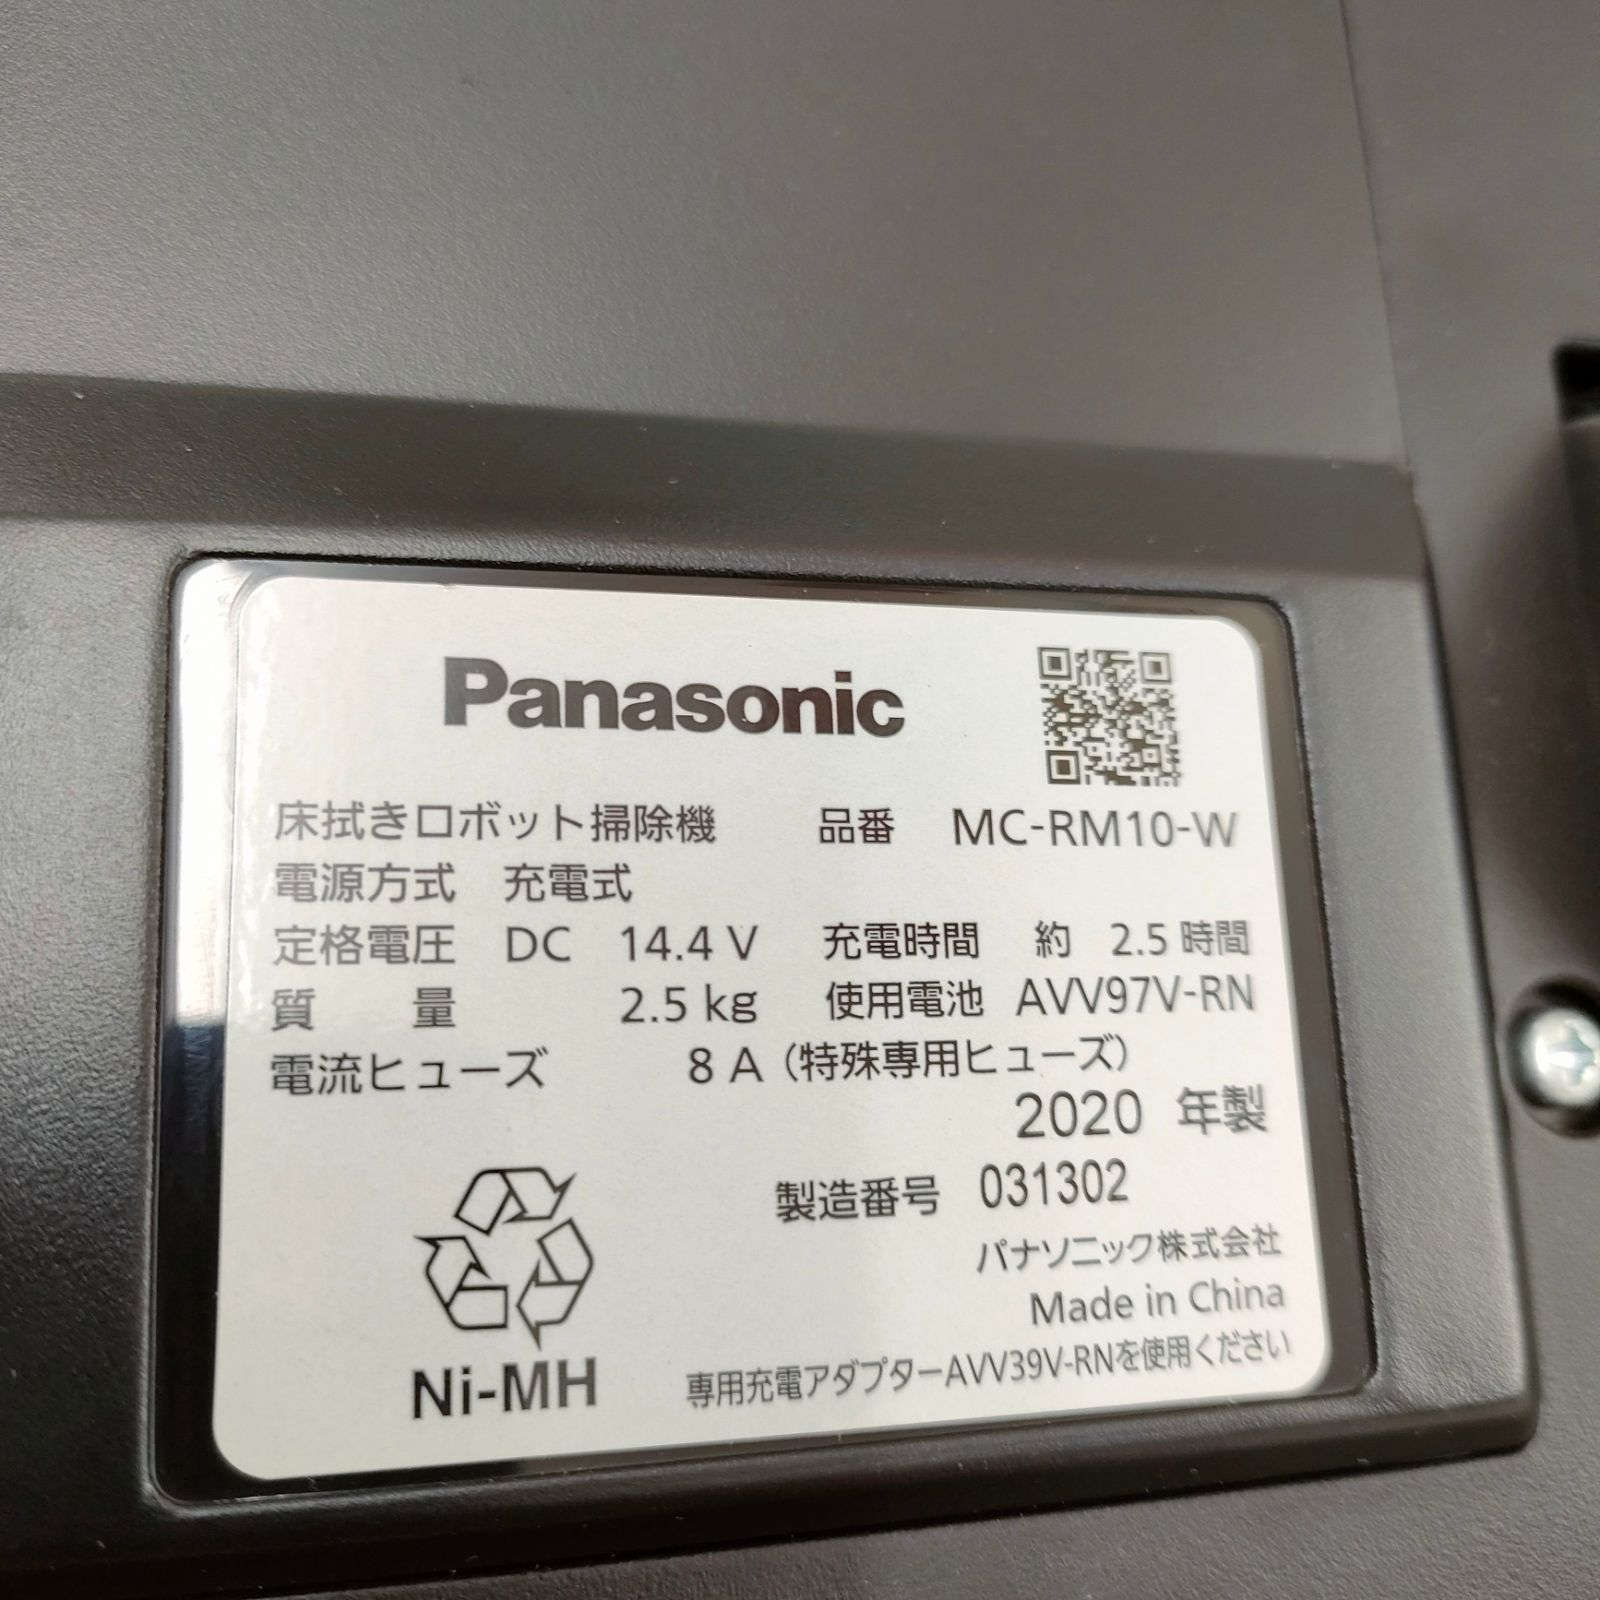 春先取りの 新品、未使用 ◇Panasonic 床拭きロボット掃除機 MC-RM10-W 